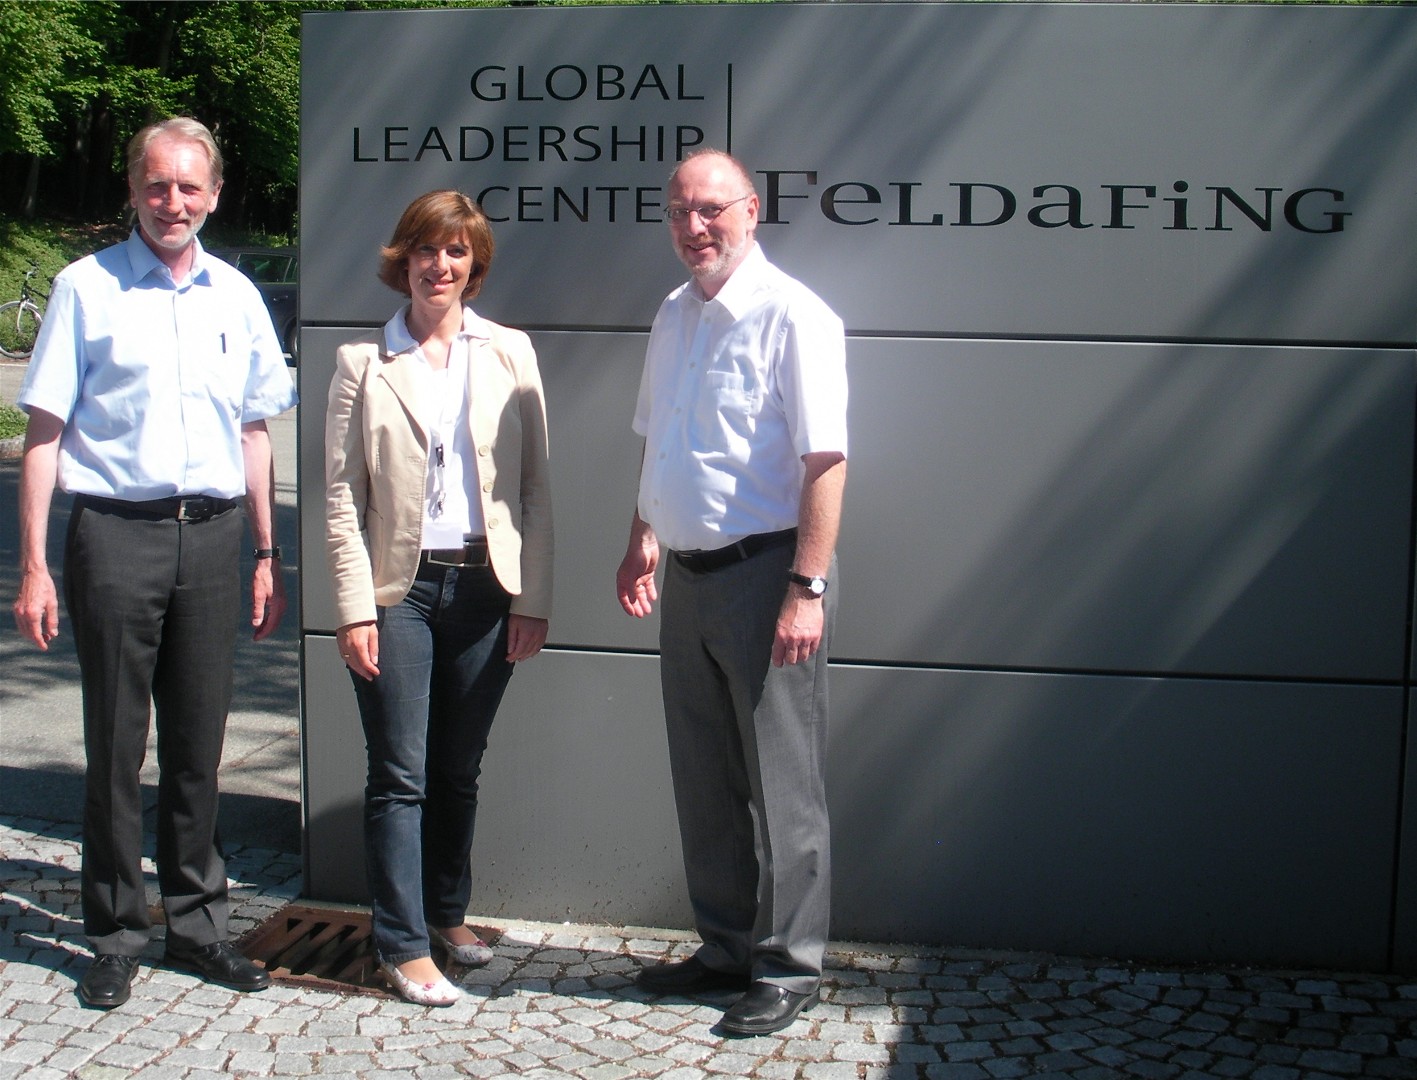 Frau Benecke von der Siemens AG mit OStD Fuchs und StD Klement